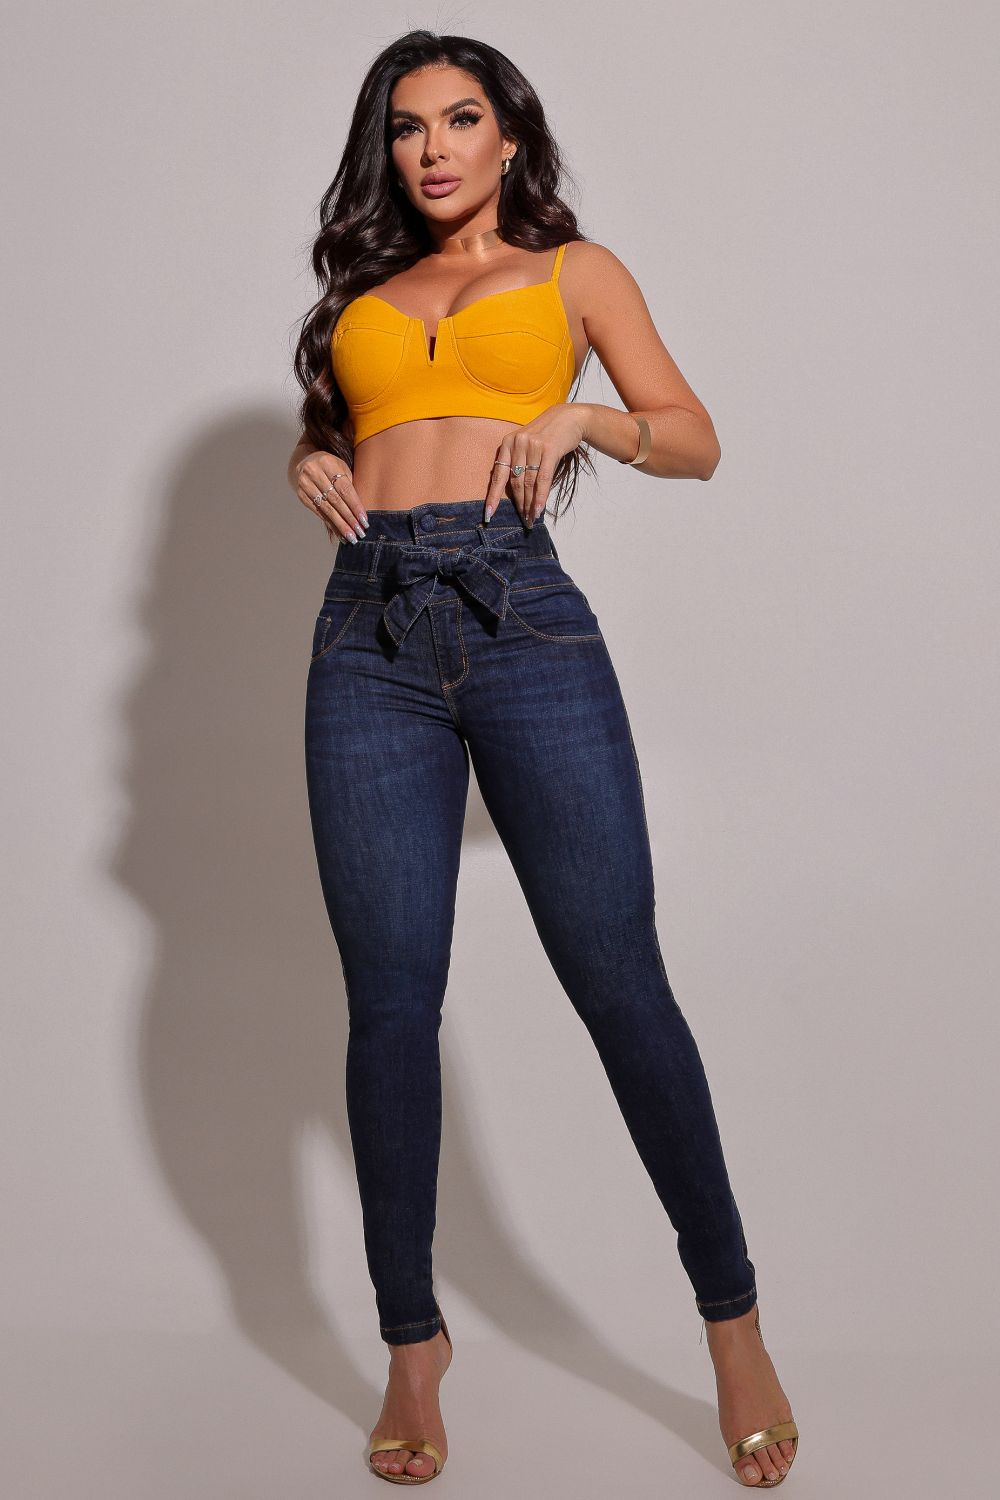 Calca jeans modeladora: Com o melhor preço